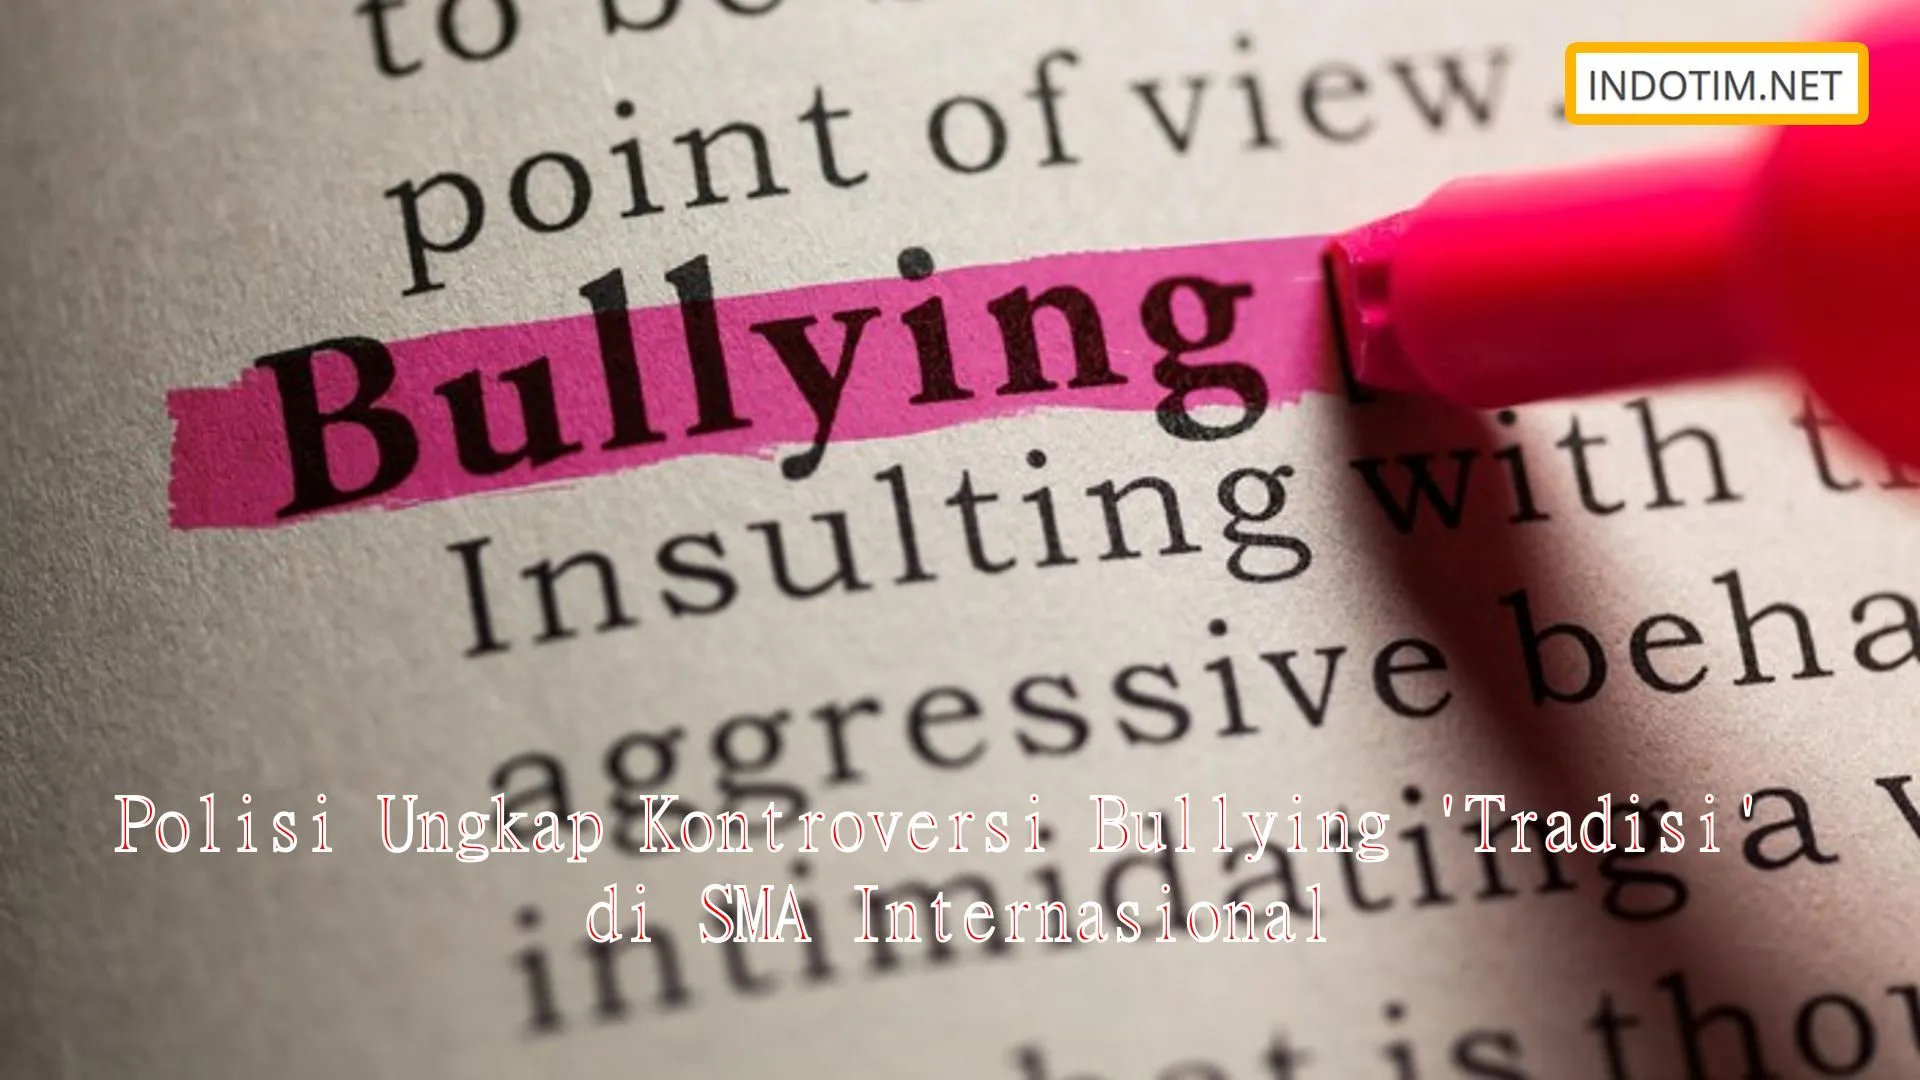 Polisi Ungkap Kontroversi Bullying 'Tradisi' di SMA Internasional